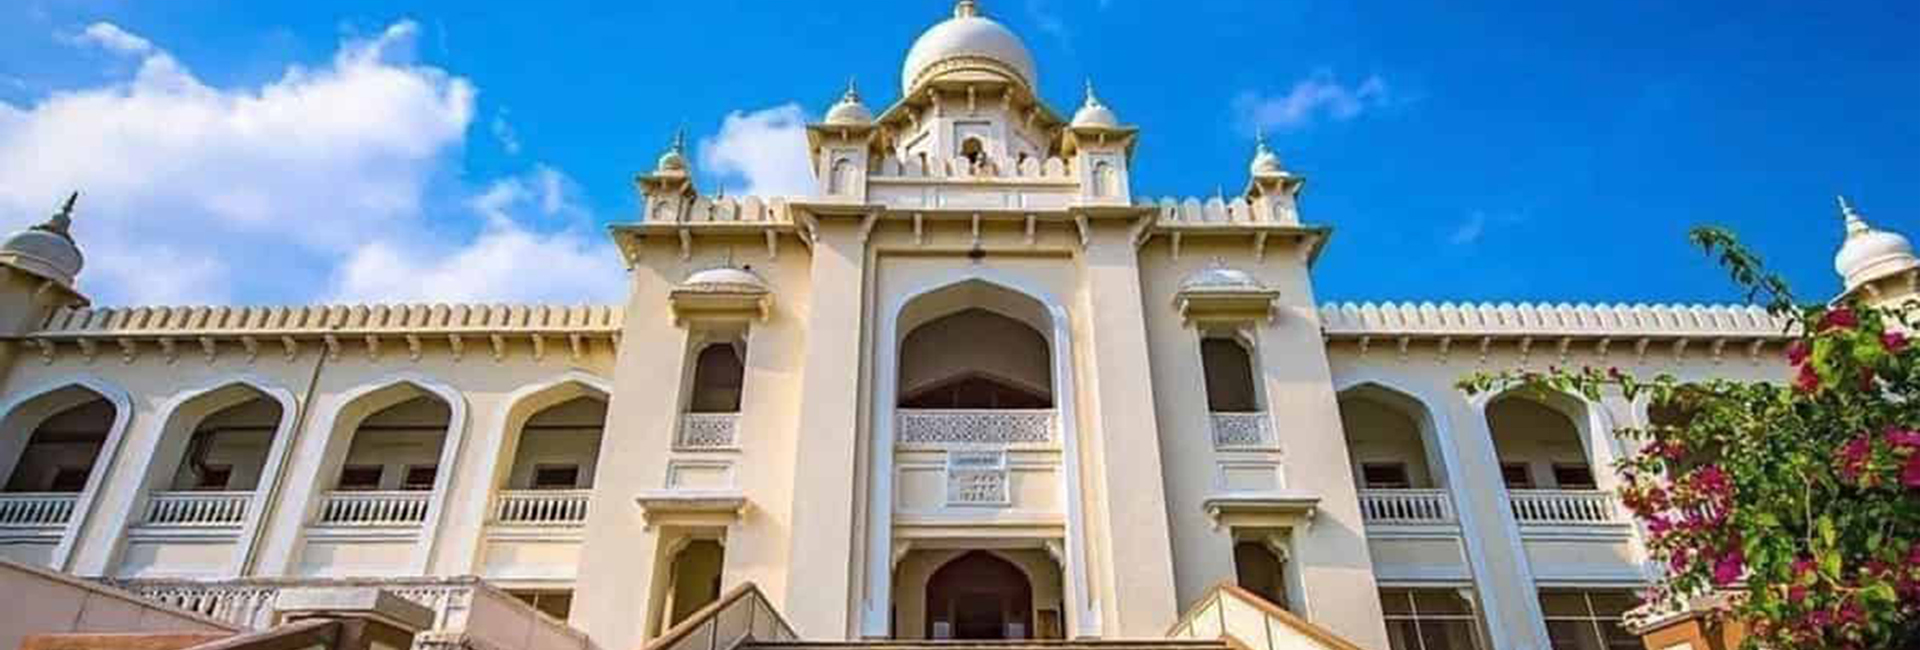 Trường Công lập Hyderabad | Ấn Độ toàn cầu